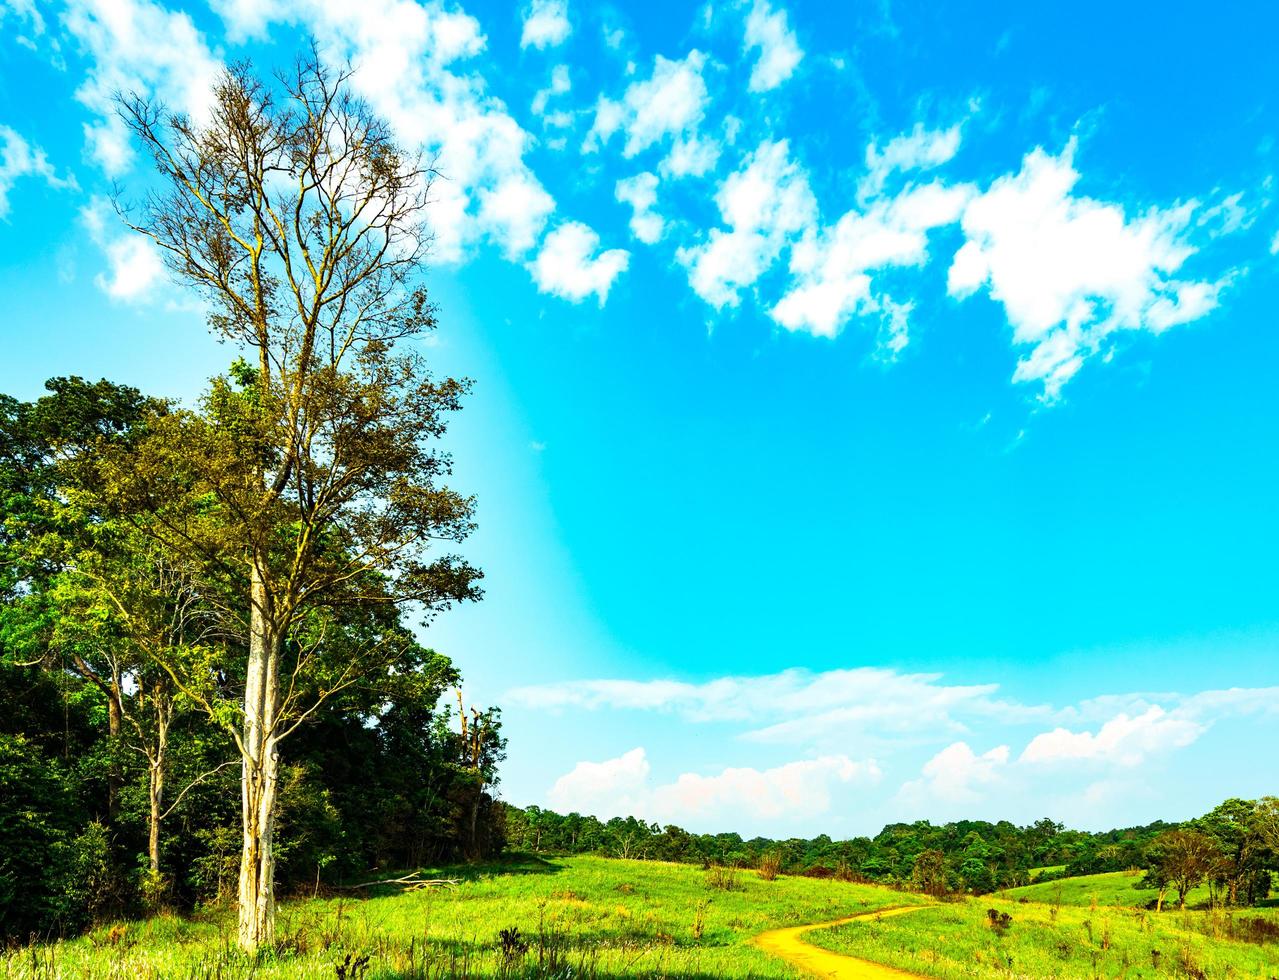 bellissimo paesaggio rurale del campo di erba verde con fiori bianchi sul cielo blu e nubi cumuliformi bianche il giorno del sole. bosco dietro la collina. concetto di pianeta terra. composizione della natura foto